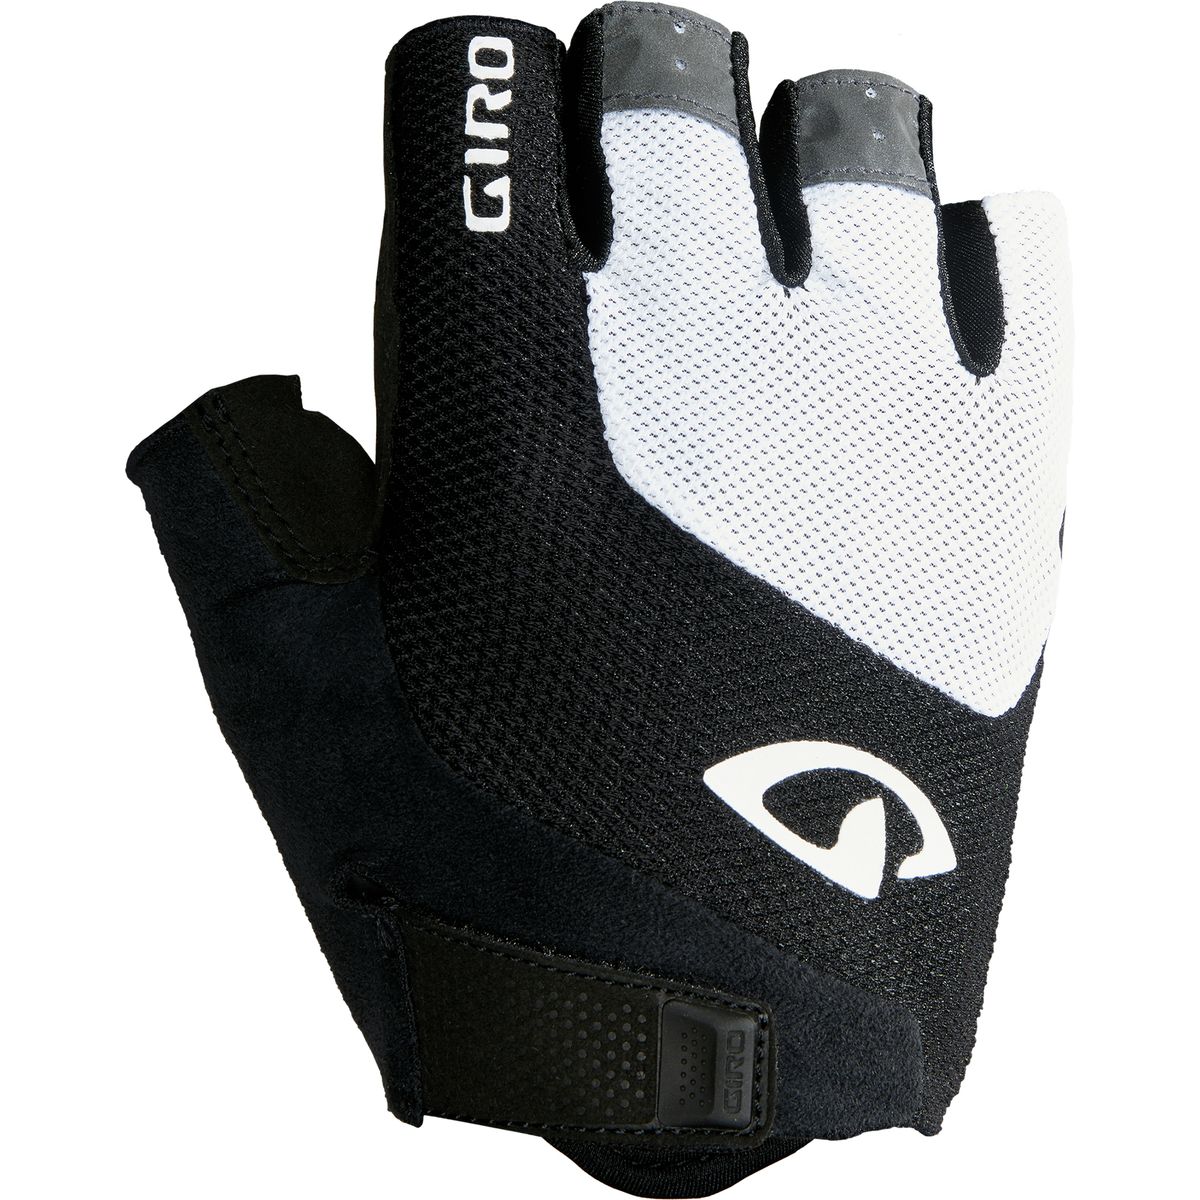 Giro Bravo Gel Glove - Men's